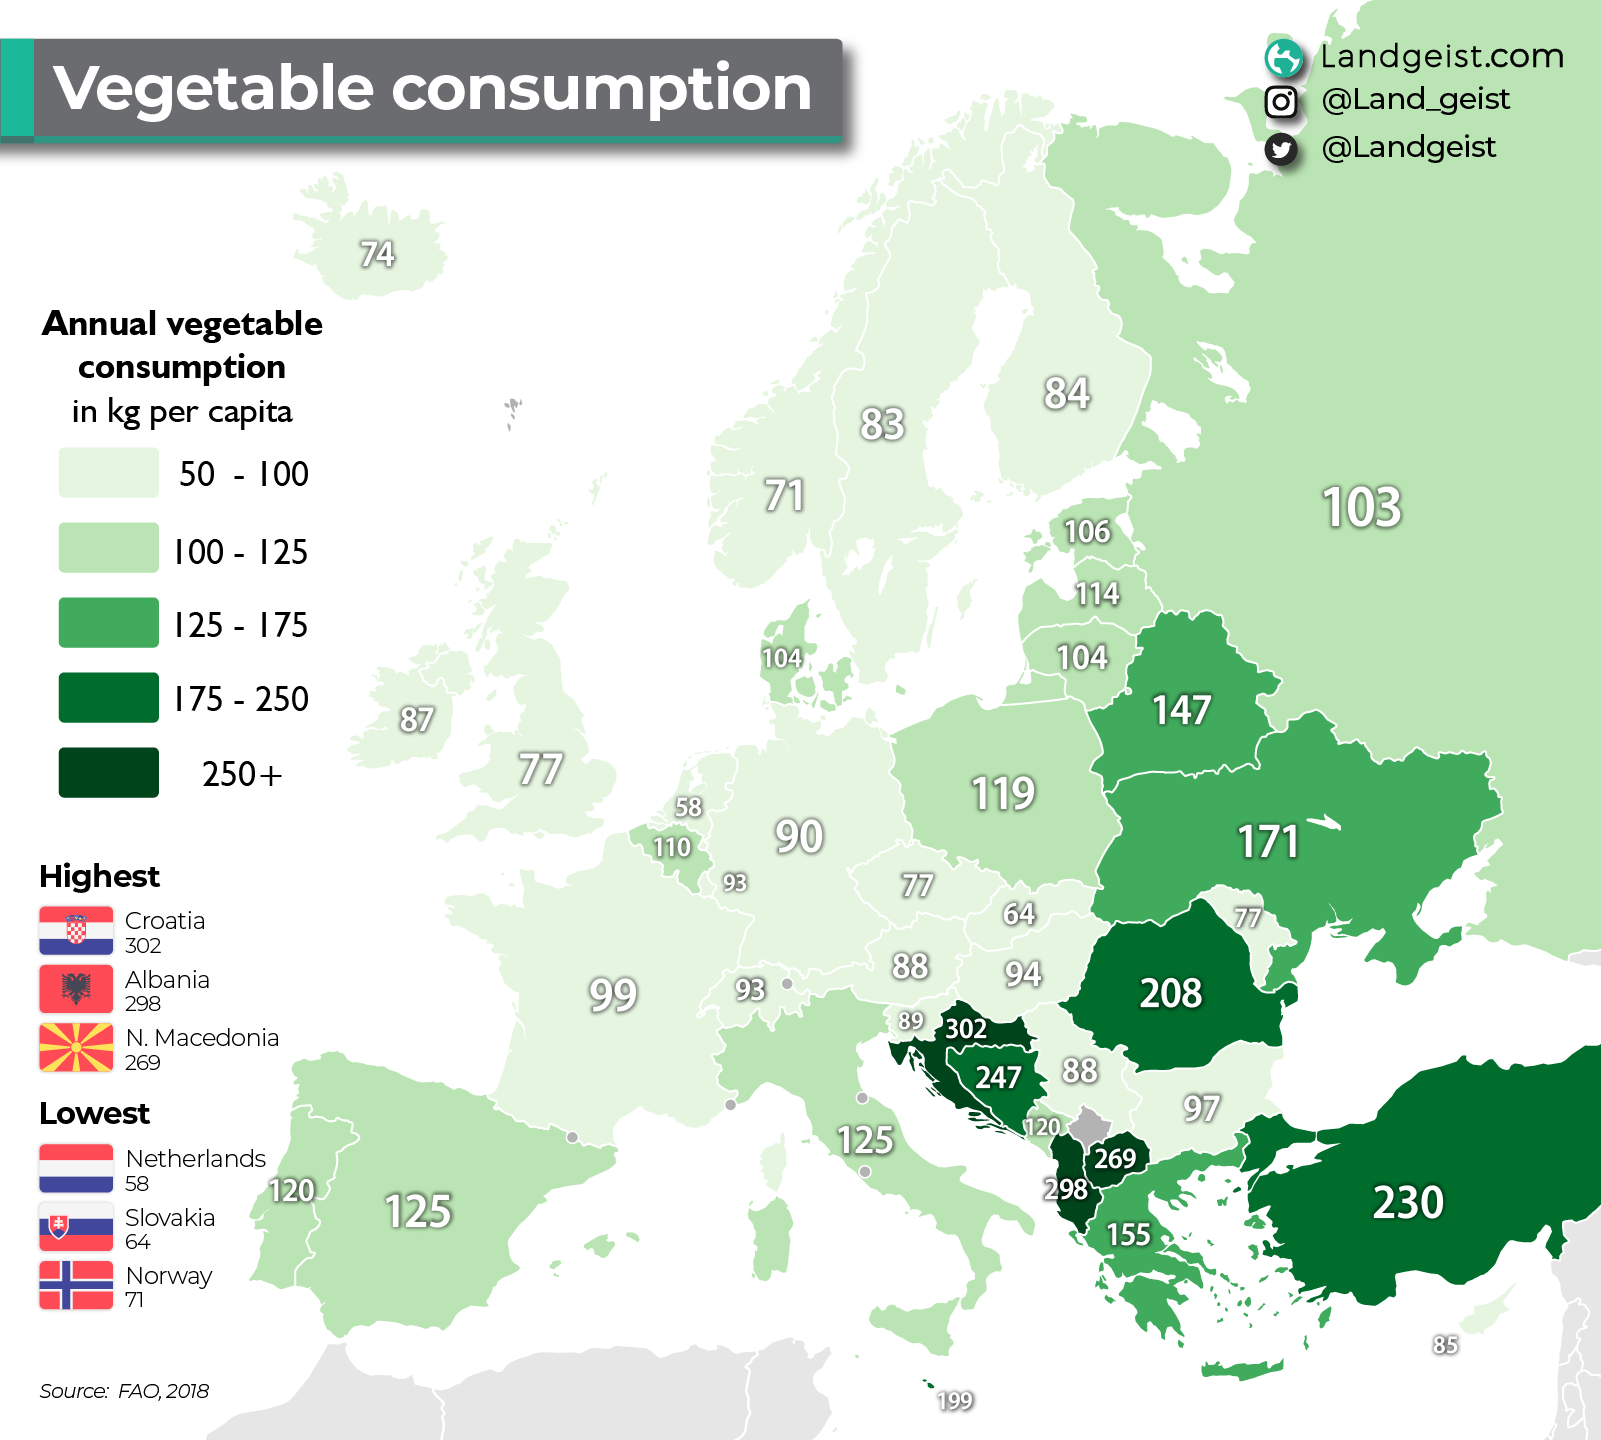 croatia-consumes-more-vegetables.png